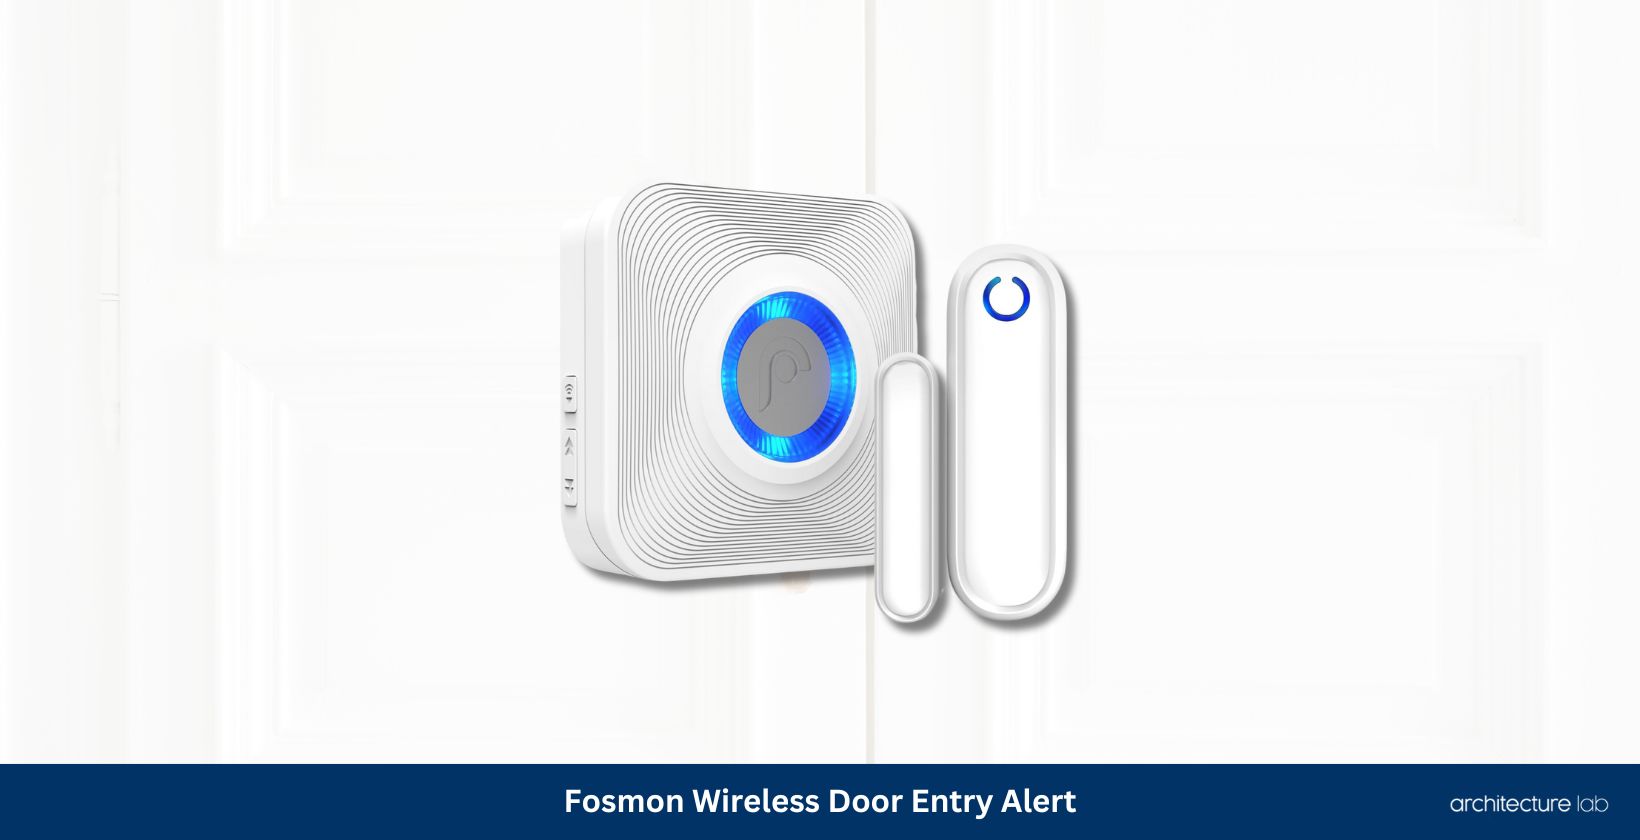 Fosmon wireless door entry alert